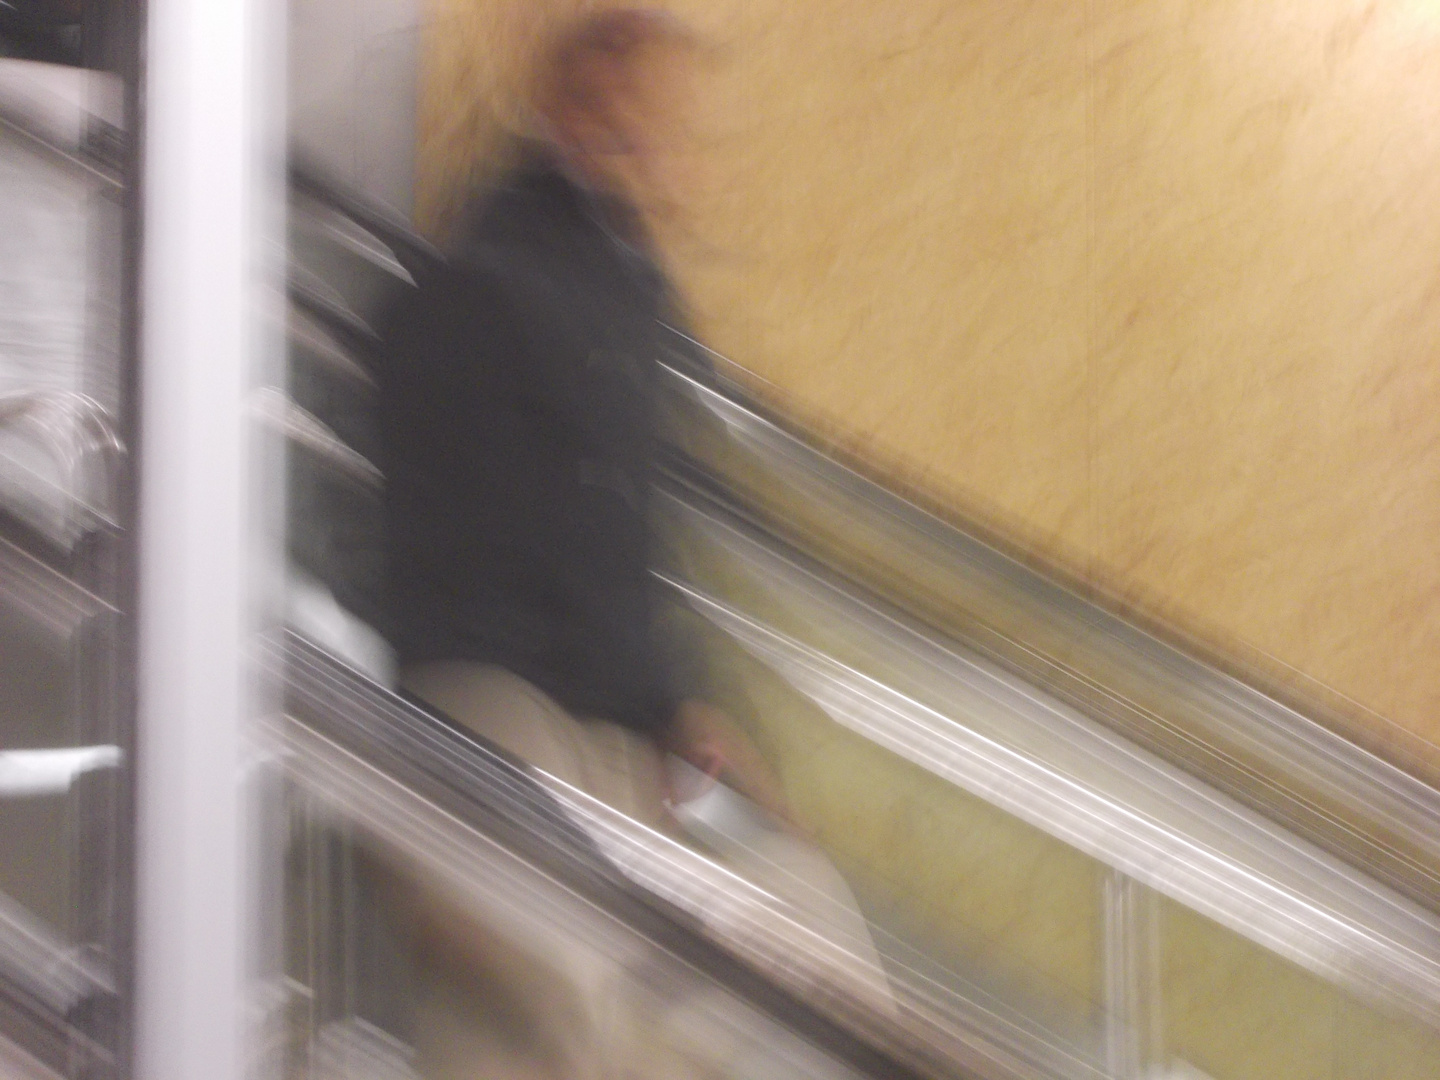 Mann auf Rolltreppe